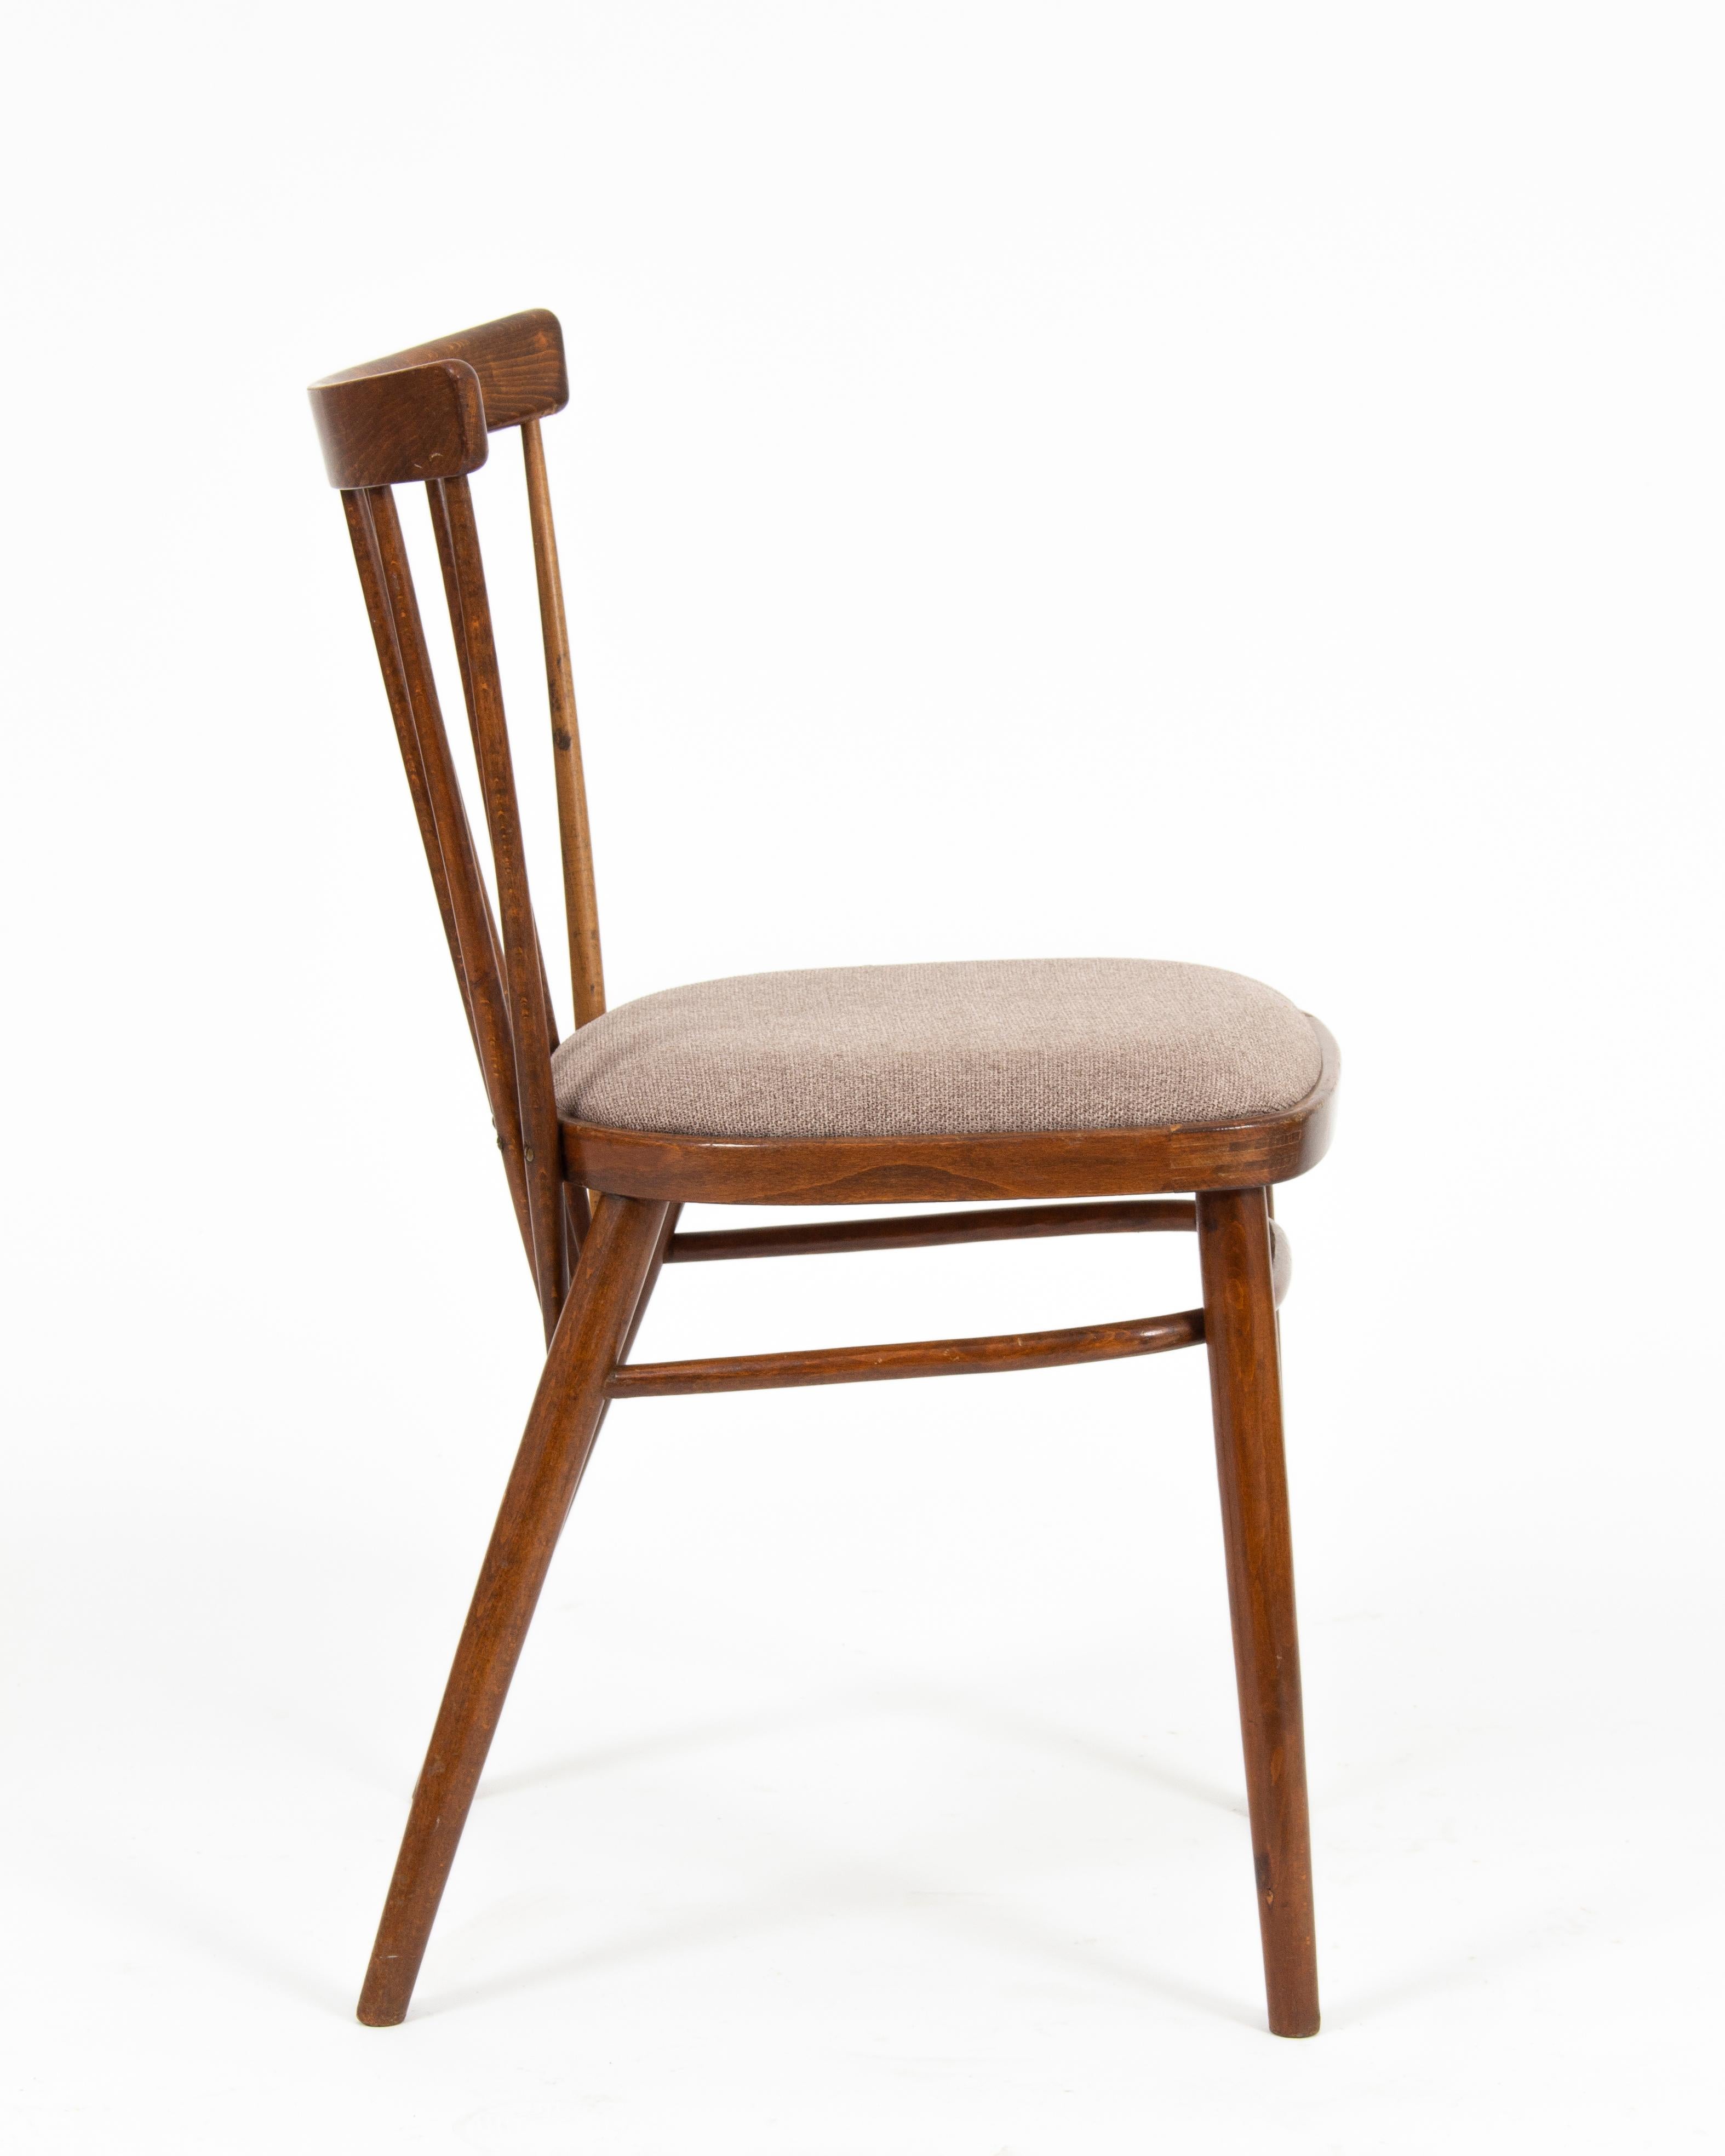 Antonín Šuman Tatra Czechoslovakian Mid-Century Chairs, 1960s, '4 Pieces' For Sale 1